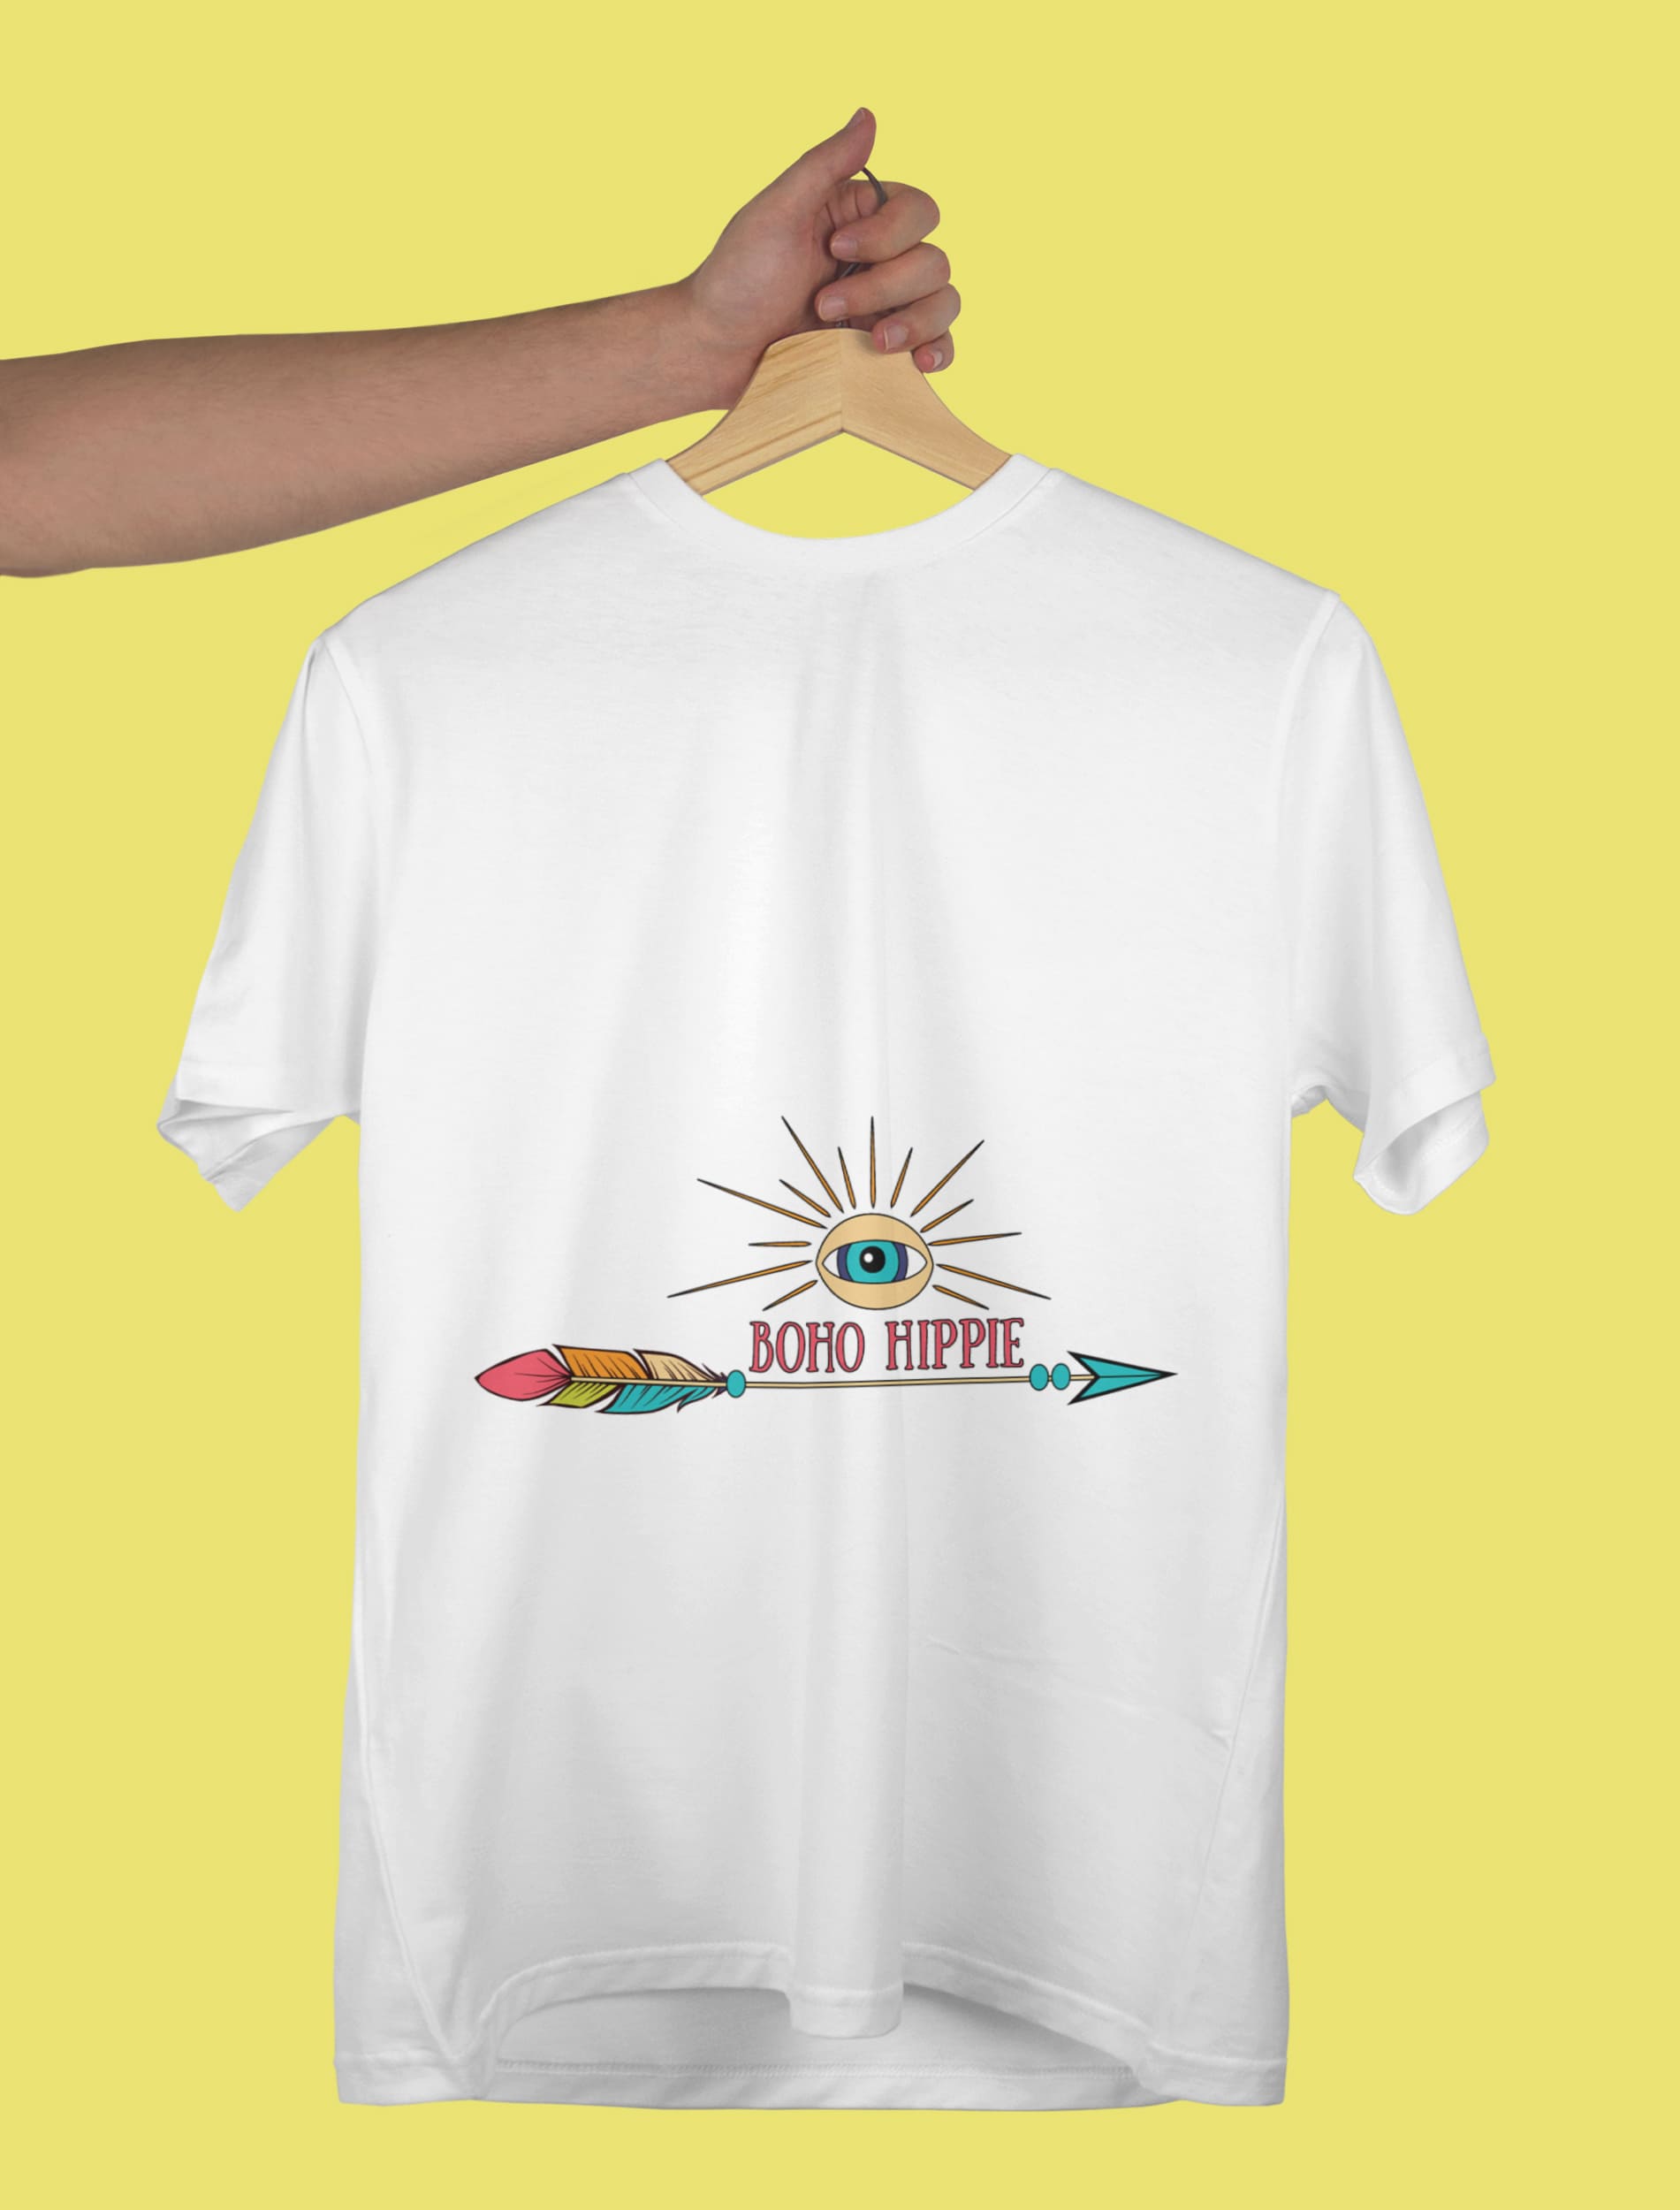 Boho hippie print on the white t-shirt.